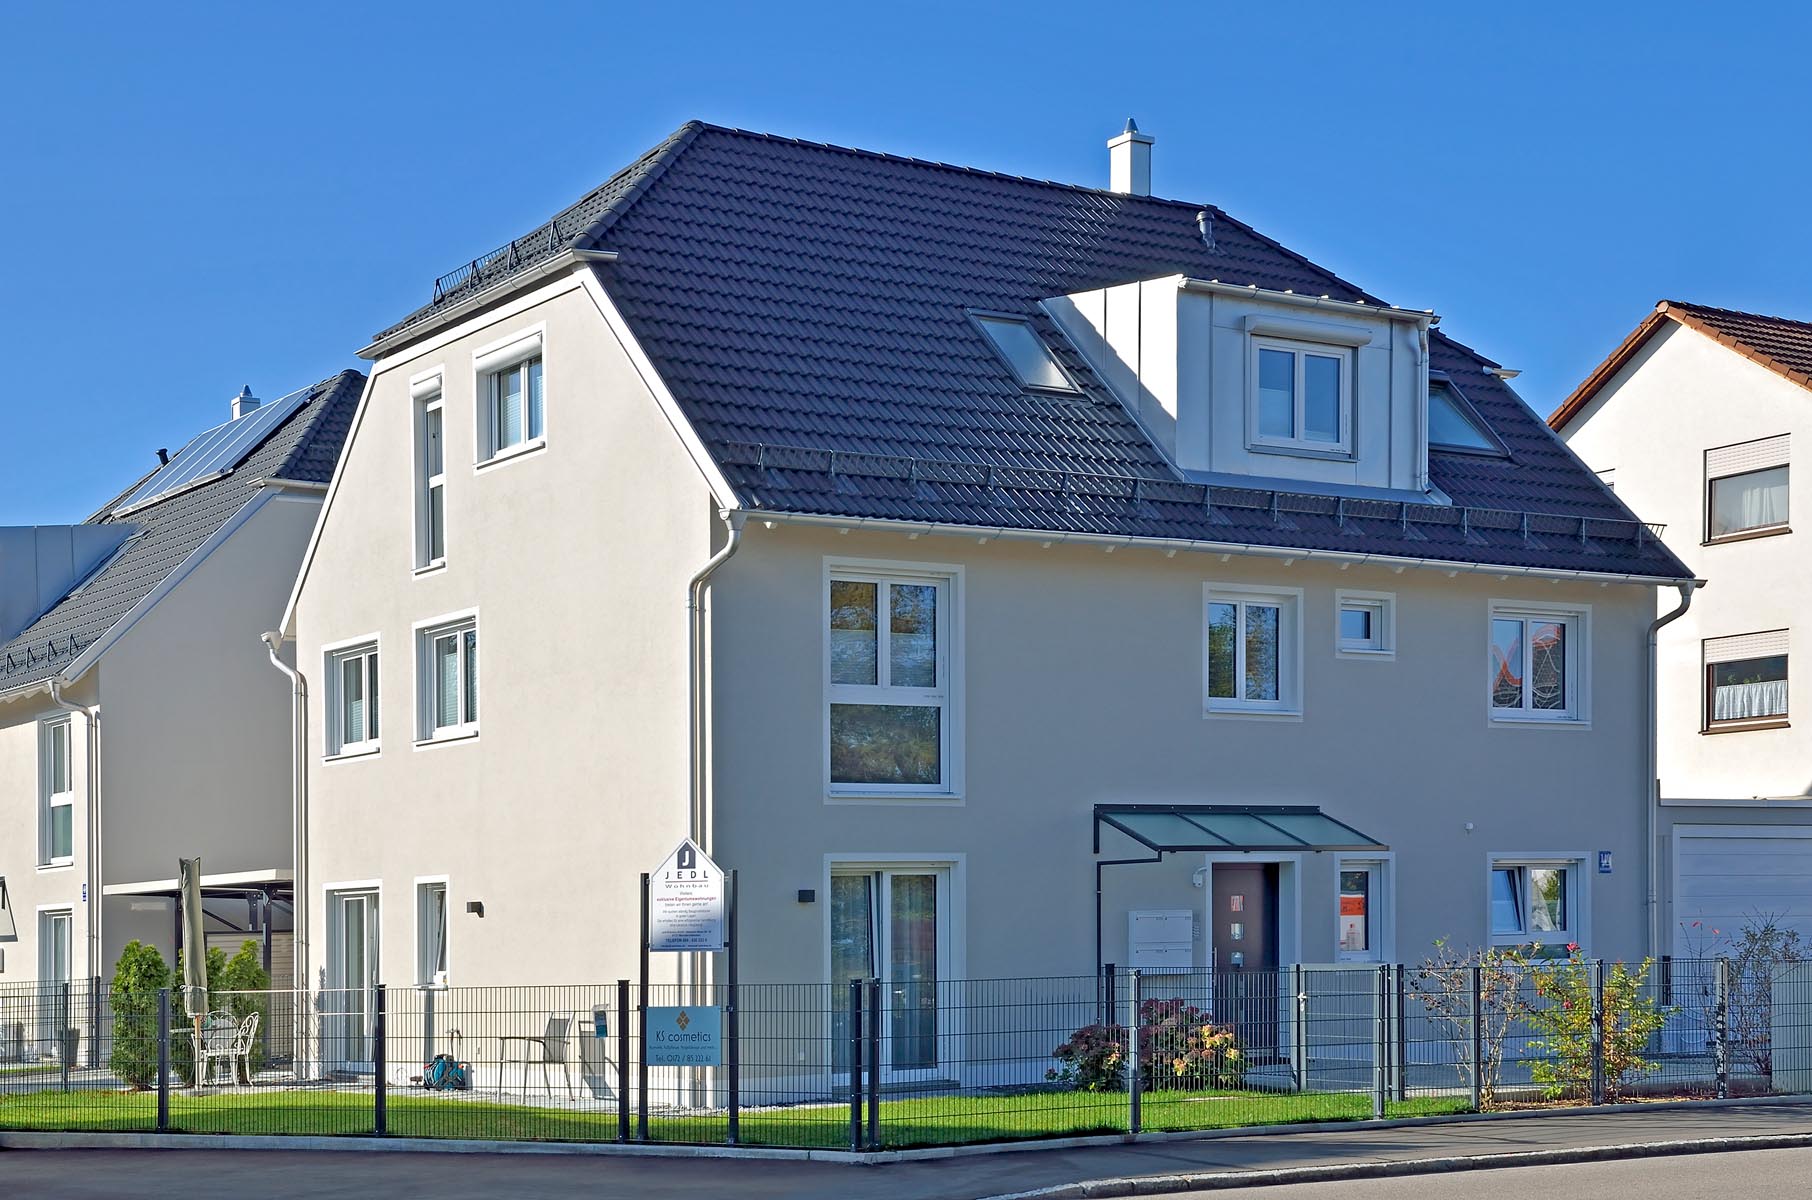 Sundergaustraße 140 3 Familienhaus BJ 2018